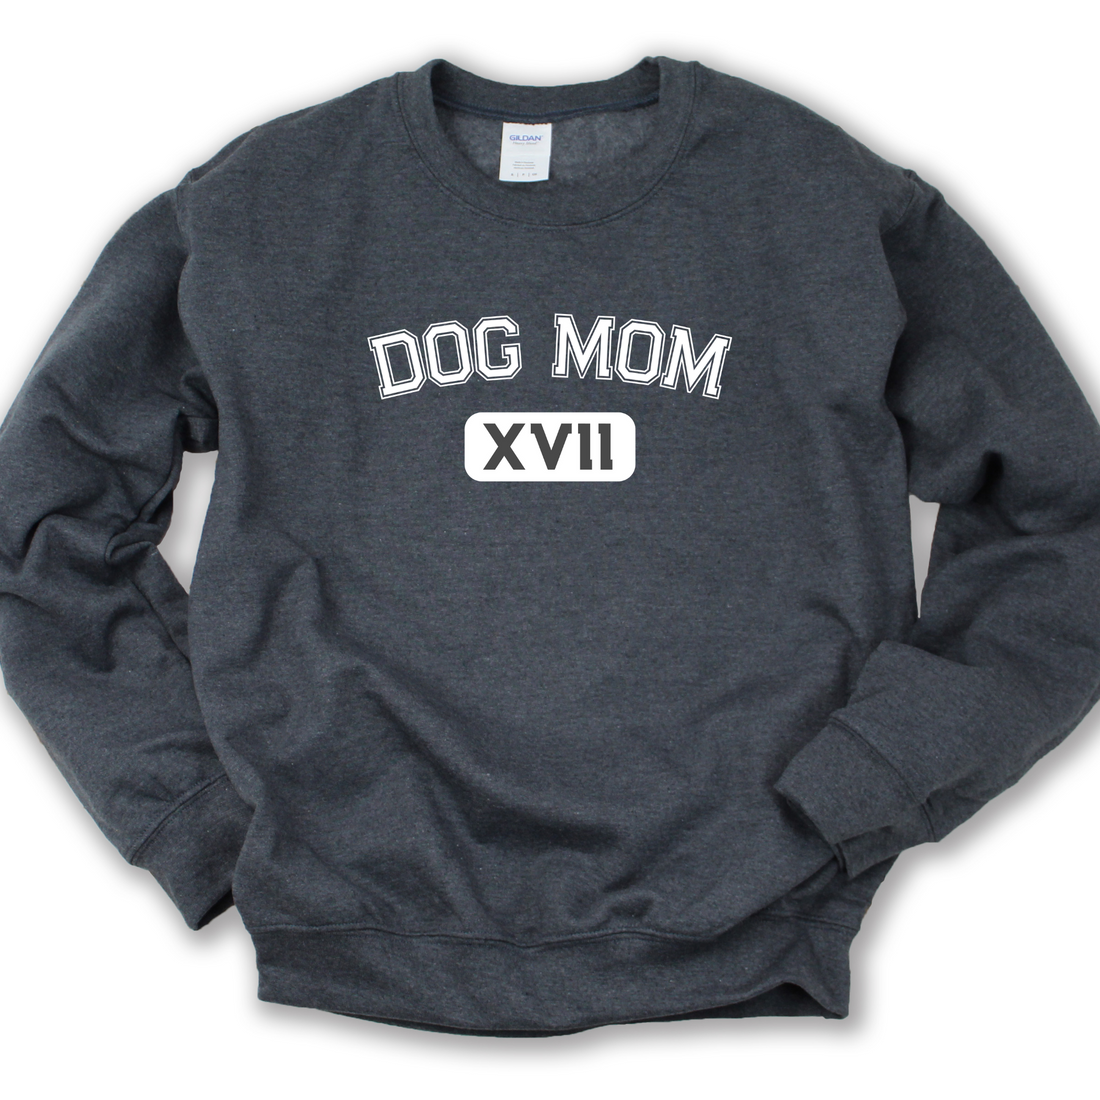 Dog Mom XVII Crewneck